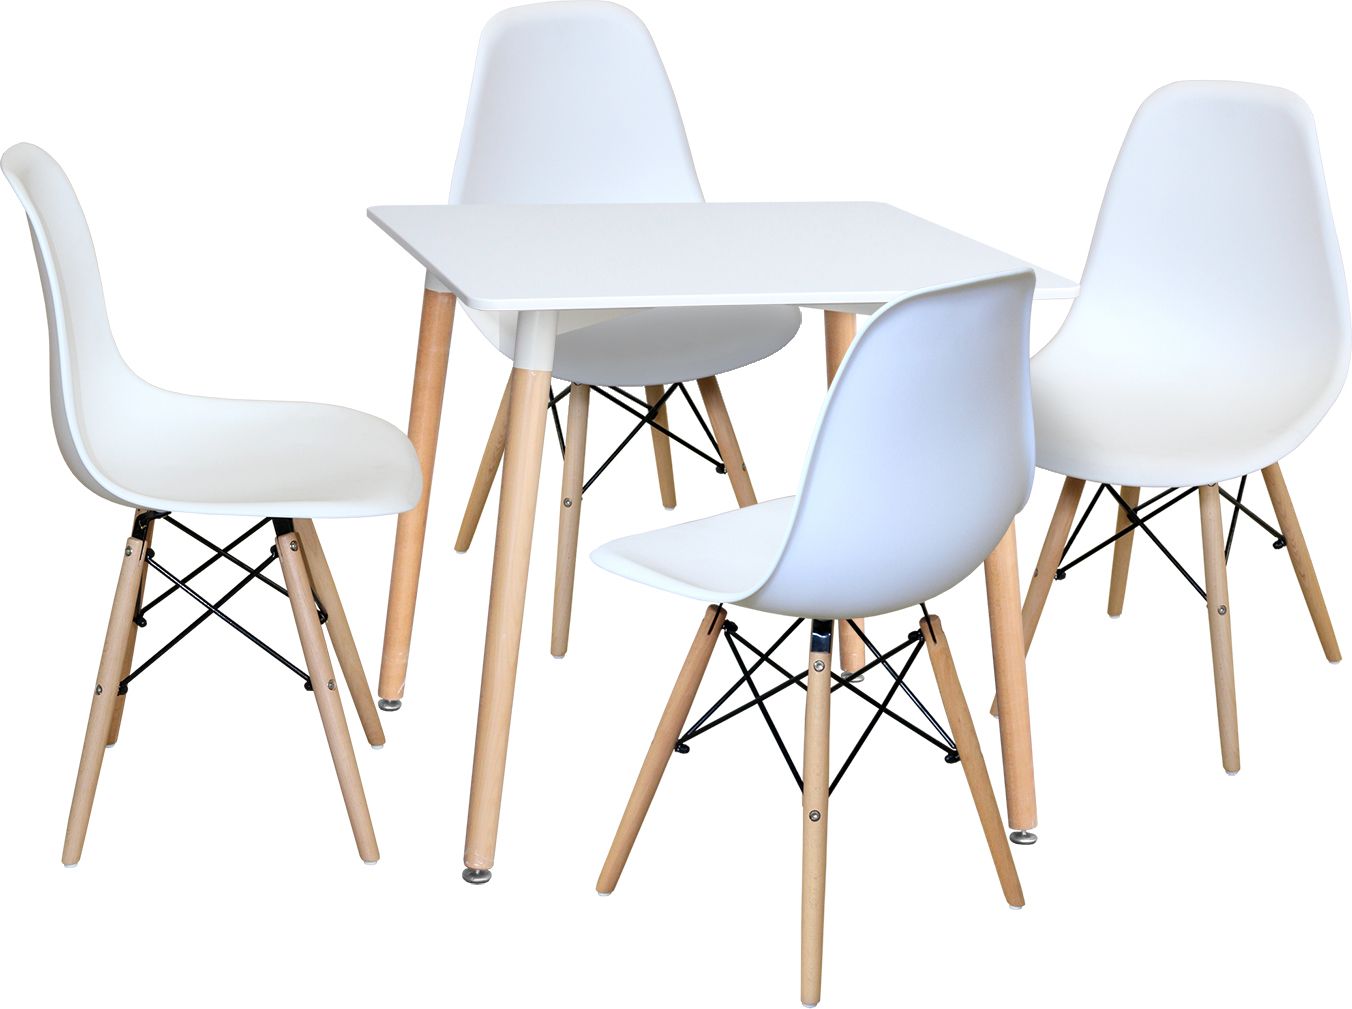 Jídelní stůl 80x80 UNO bílý + 4 židle UNO bílé Mdum - M DUM.cz